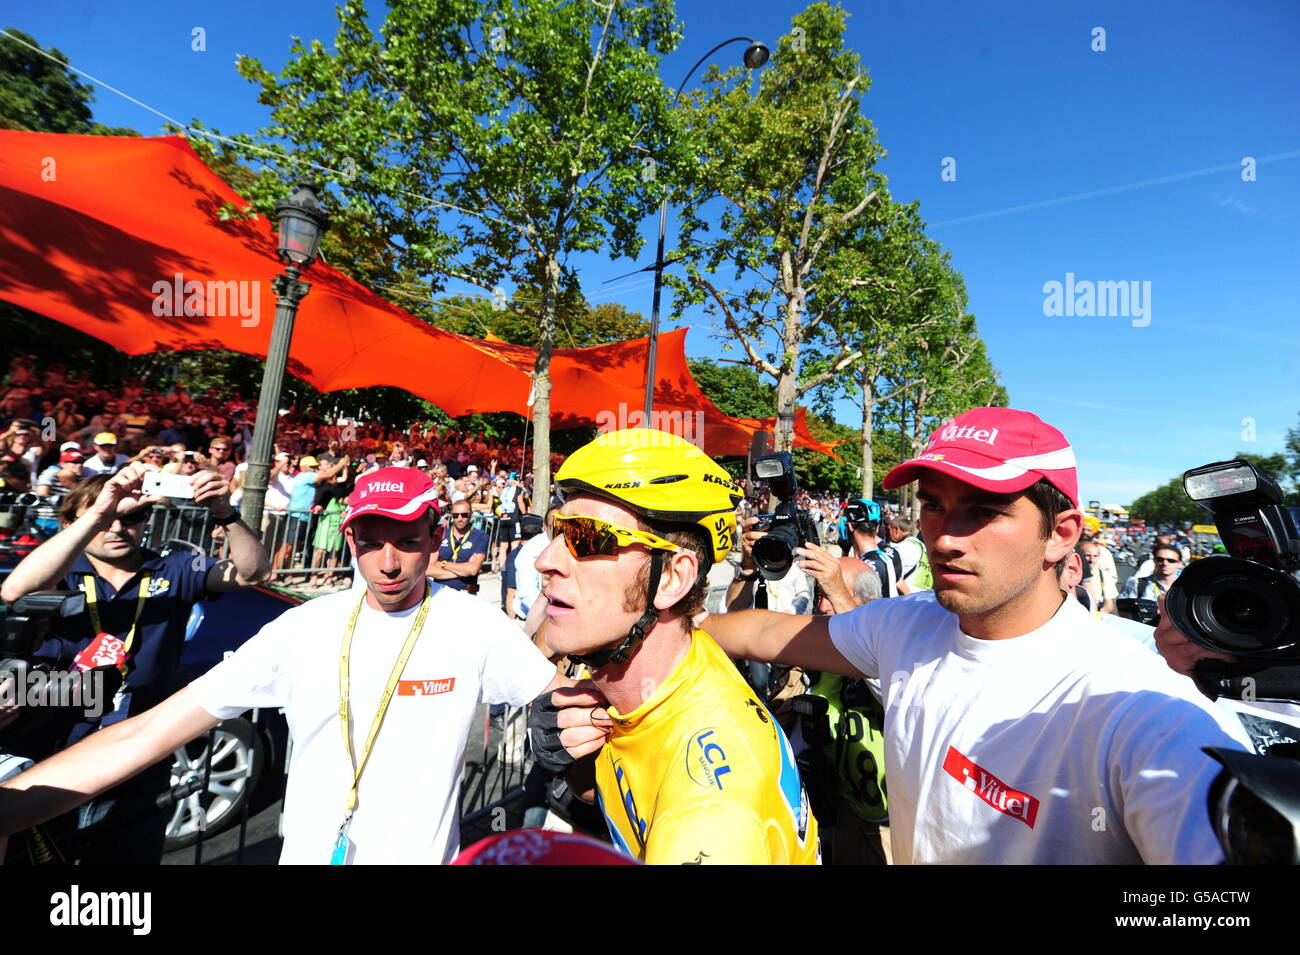 Bradley Wiggins von Sky Pro Racing (gelbes Trikot) aus Großbritannien, nachdem er die Ziellinie überquert und die Tour de France 2012 in Paris gewonnen hatte. Stockfoto